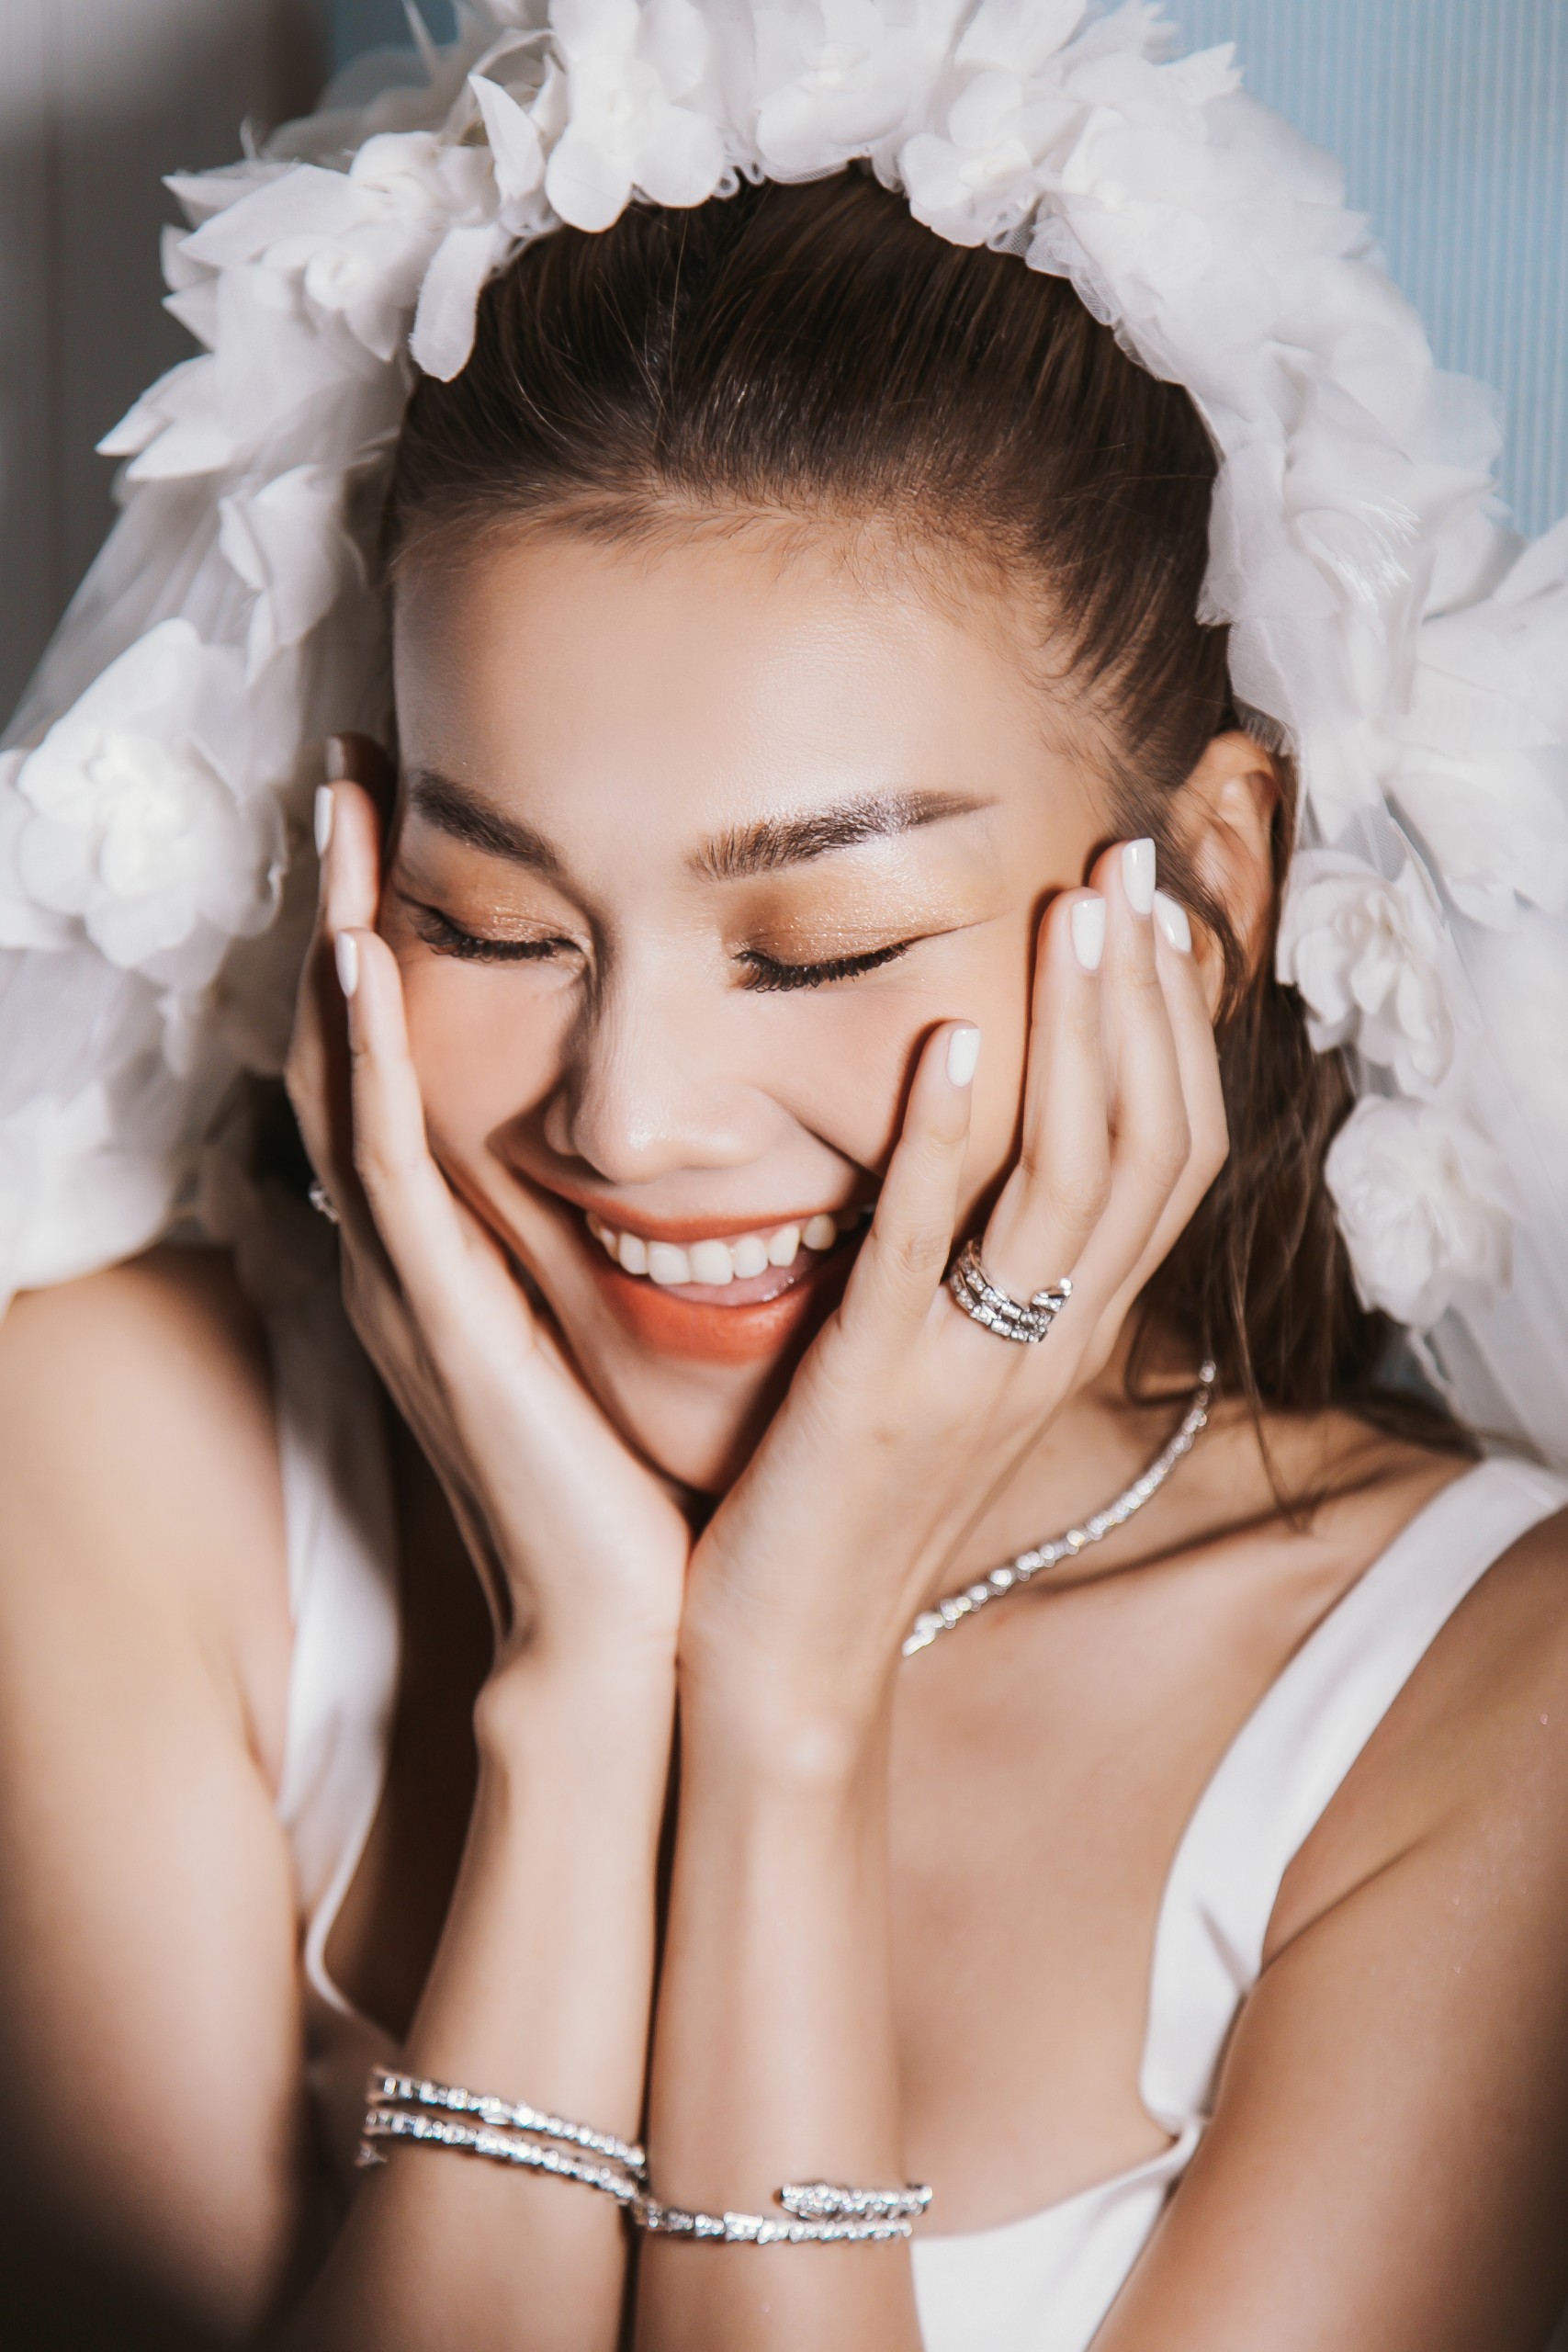 Siêu mẫu Thanh Hằng đeo trang sức hơn 10 tỉ đồng trong đám cưới - Ảnh 6.